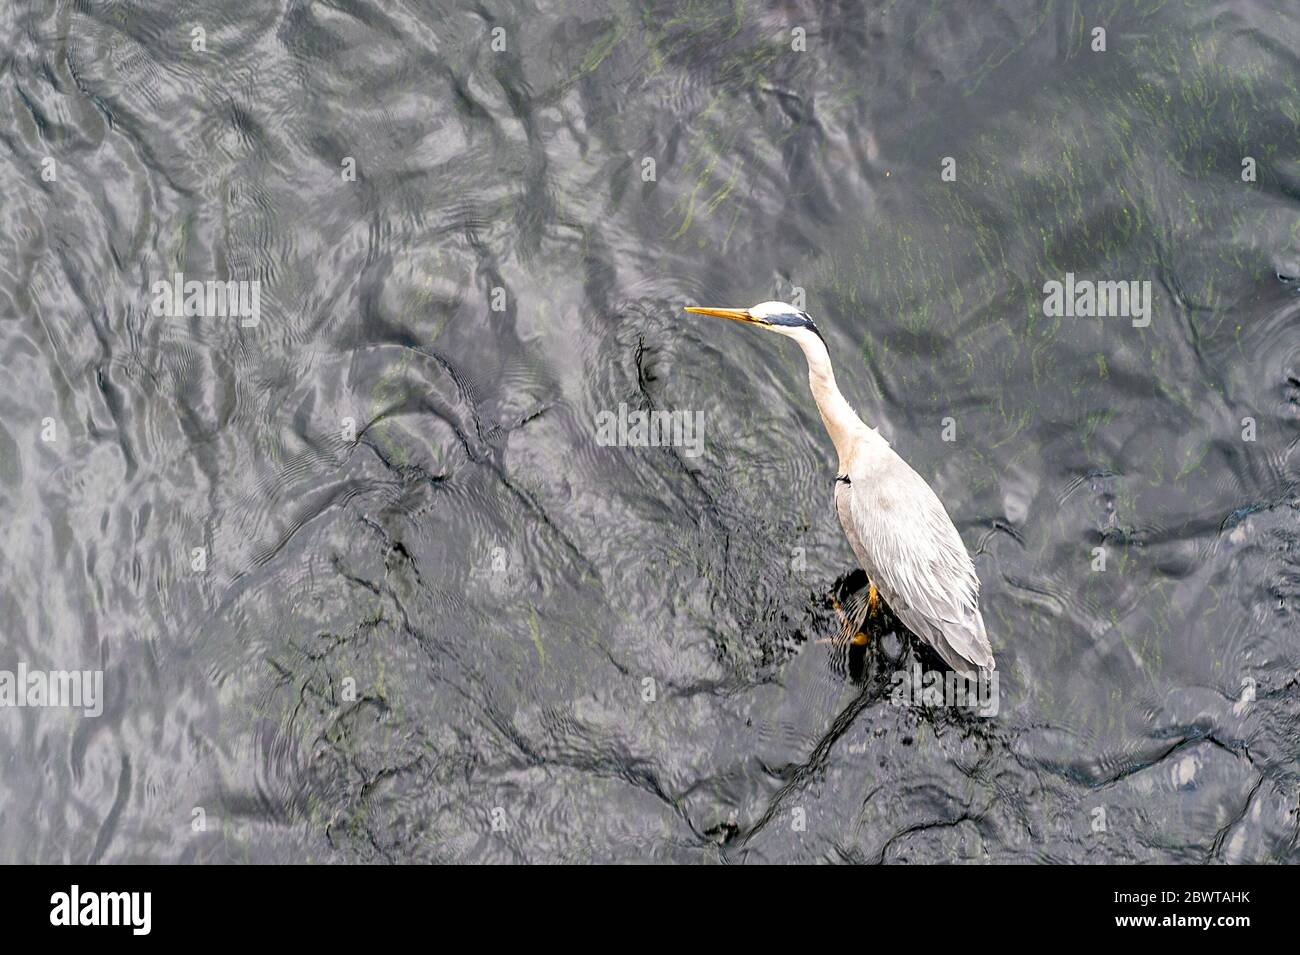 Cork, Irlande. 3 juin 2020. Un héron gris attend son prochain repas de poisson dans la rivière Lee à Cork ce matin. Crédit : AG News/Alay Live News Banque D'Images